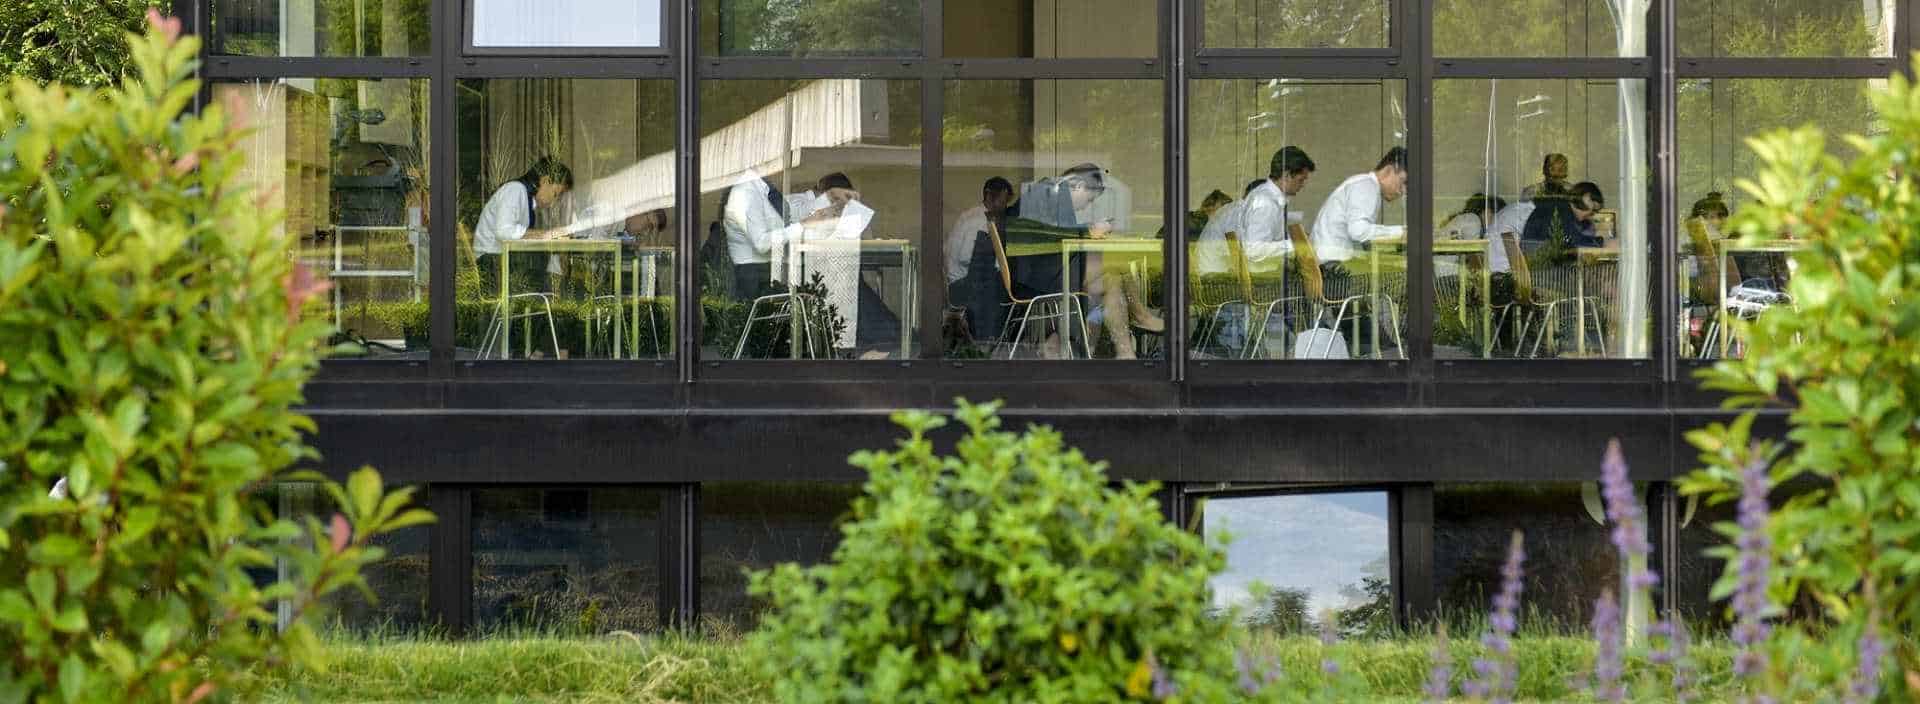 Apprendre un métier passionnat a l'Ecole Hôtelière de Genève, suivez le Cursus généraliste en 3 ans